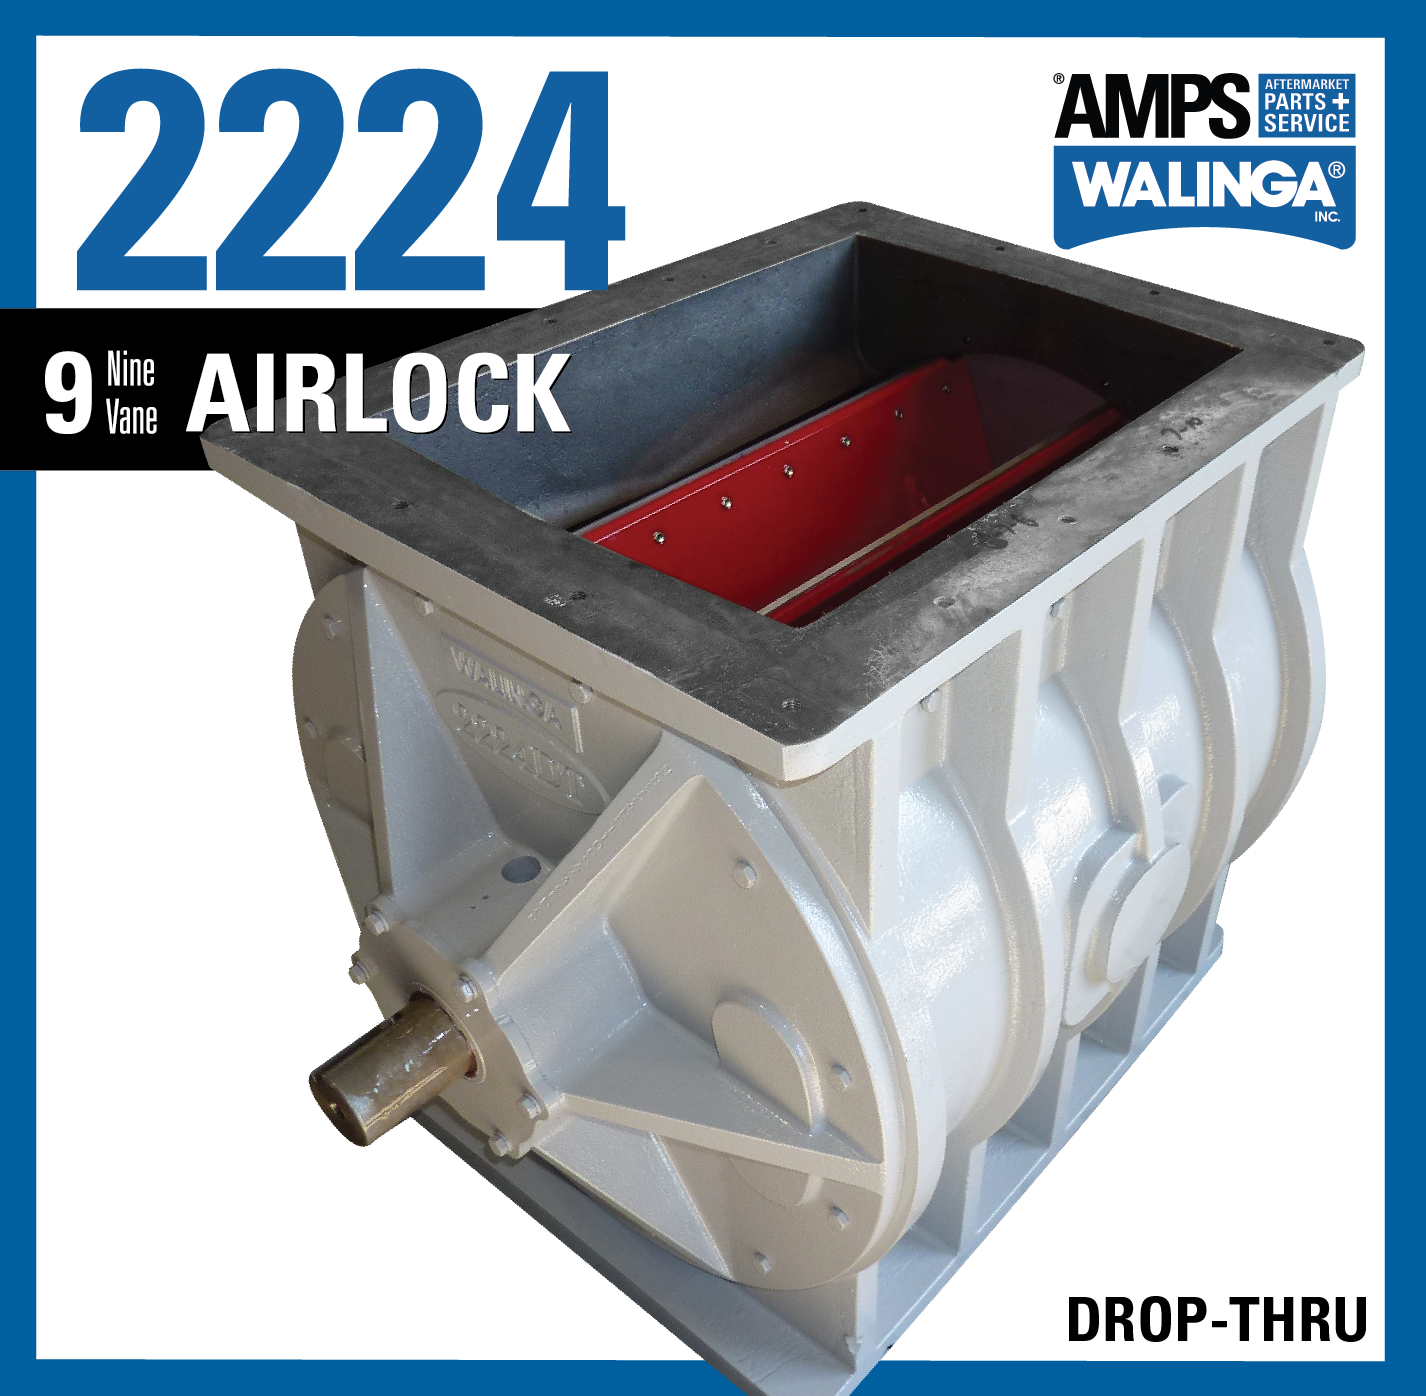 2224 DT Airlock